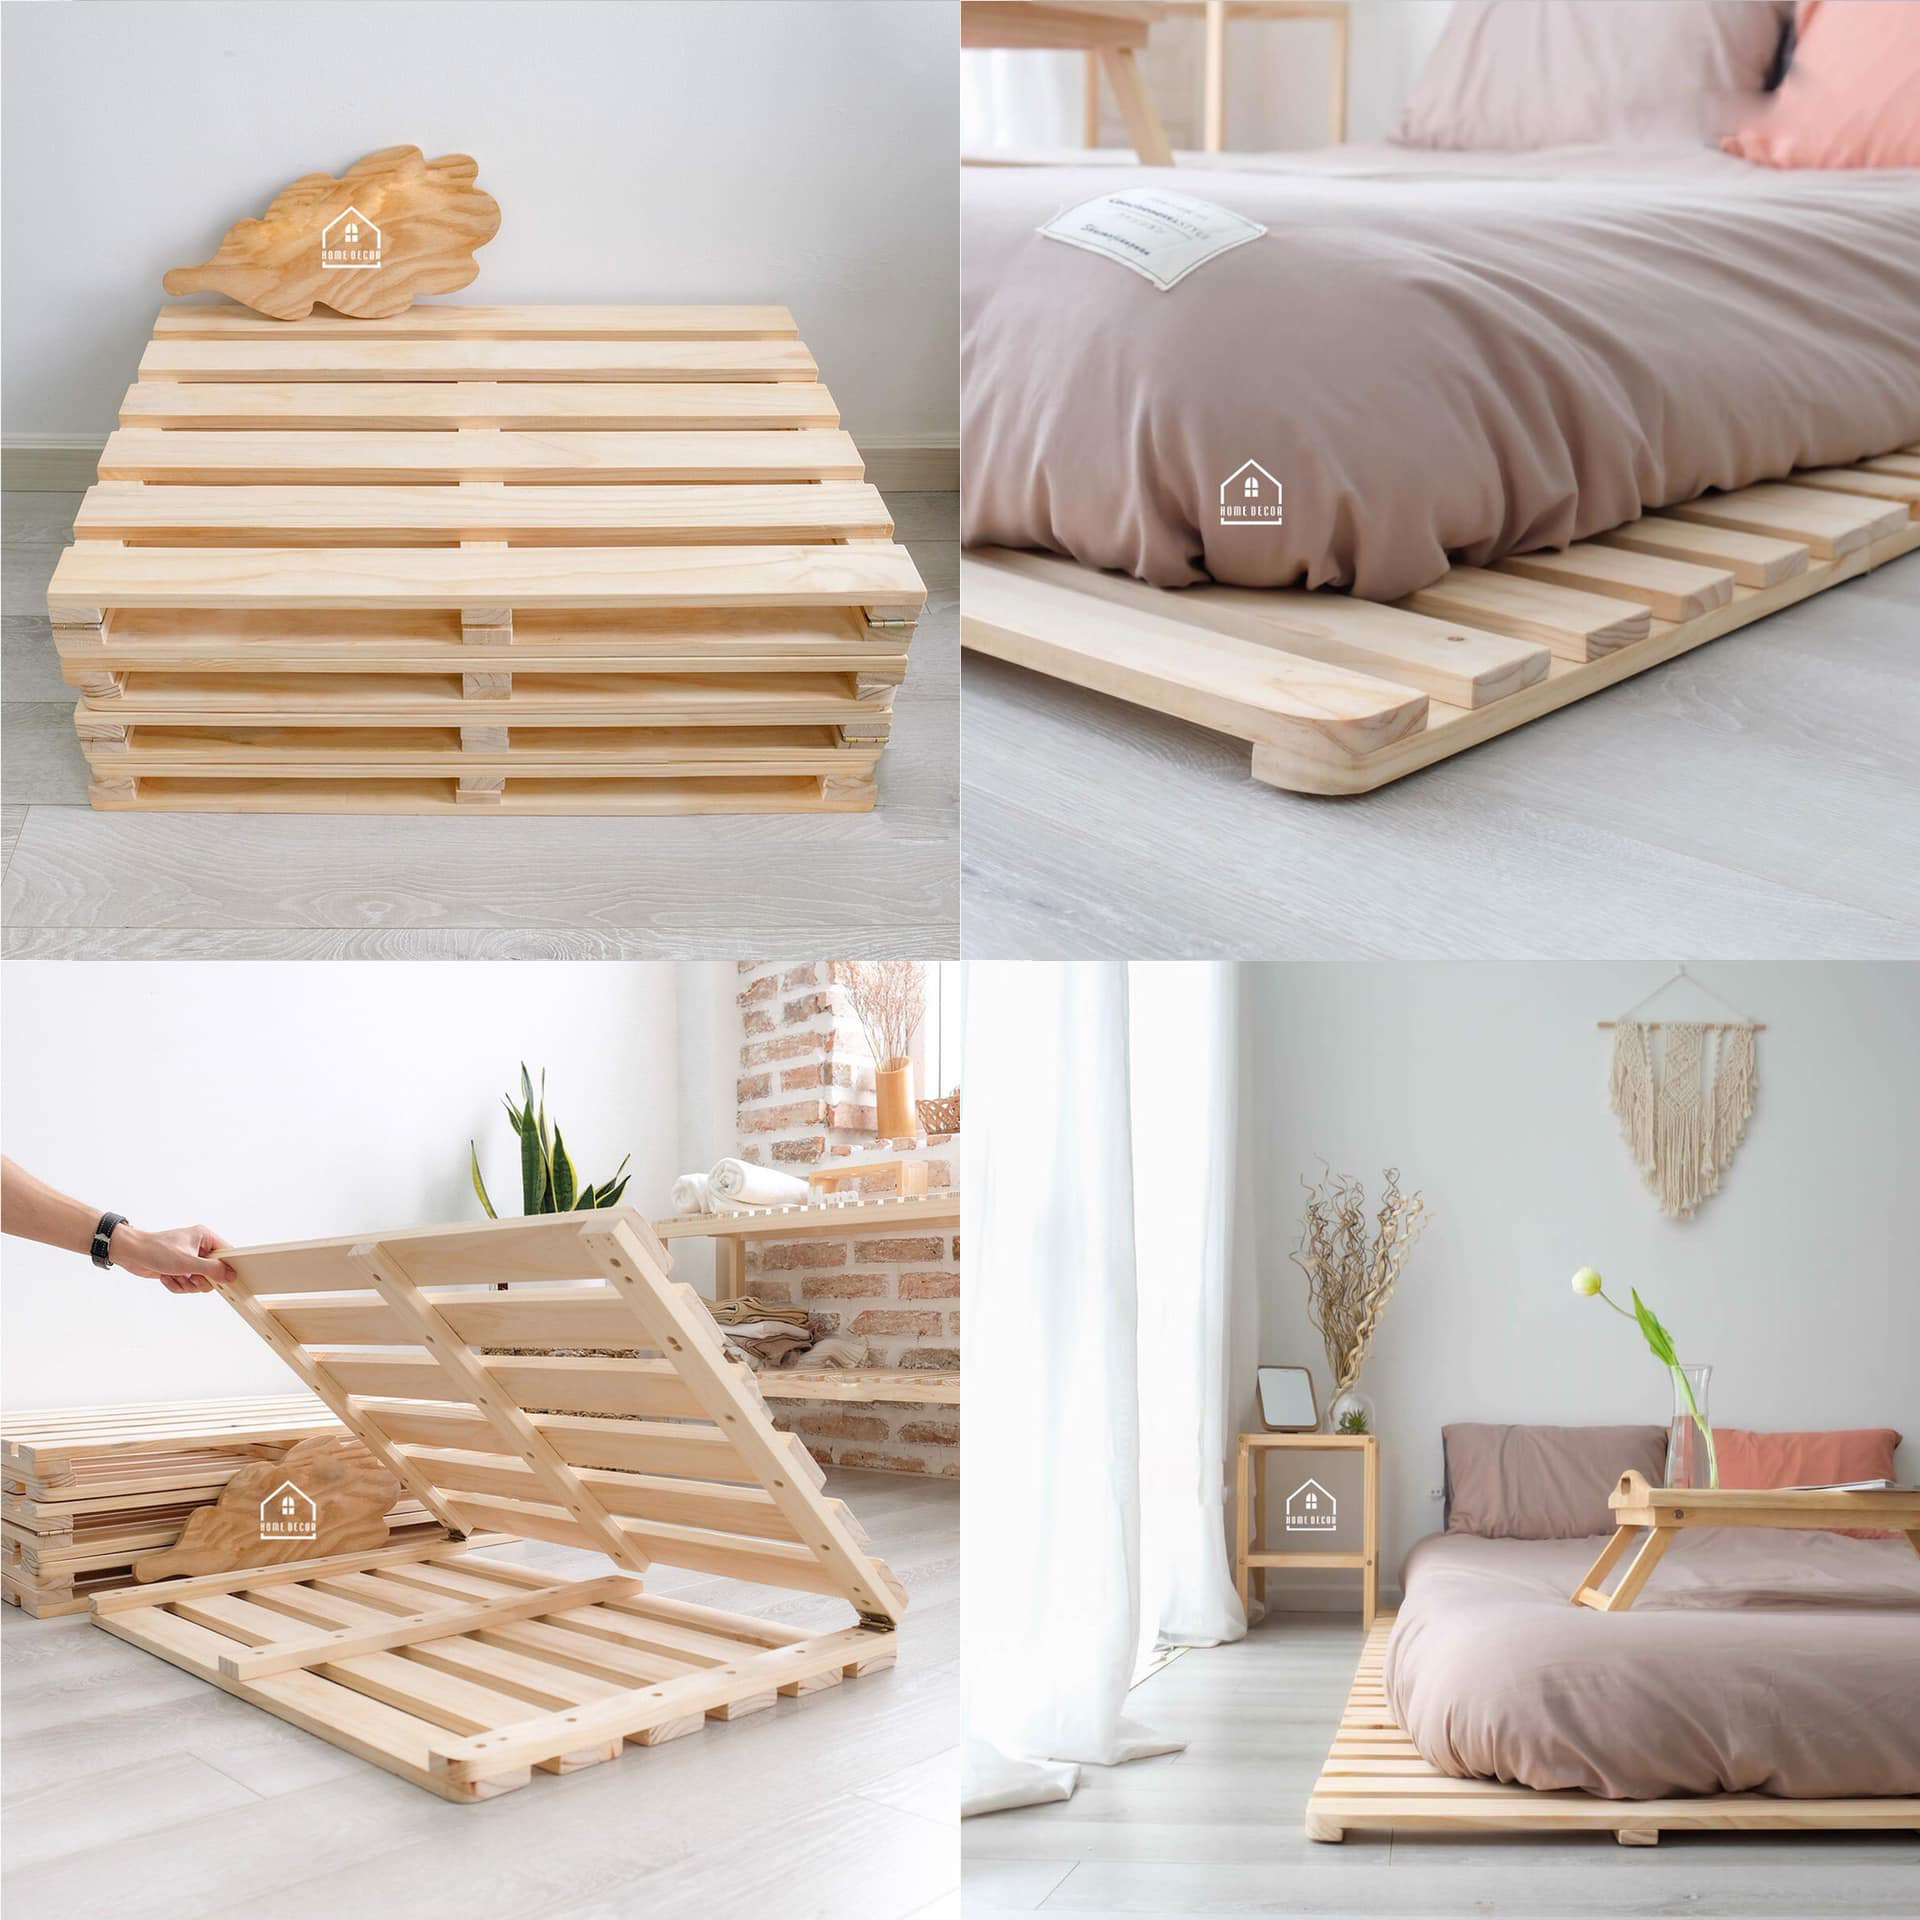 Giường ngủ đa dạng kích thước - Giường pallet - Giường gỗ thông - Giường ngủ giá rẻ